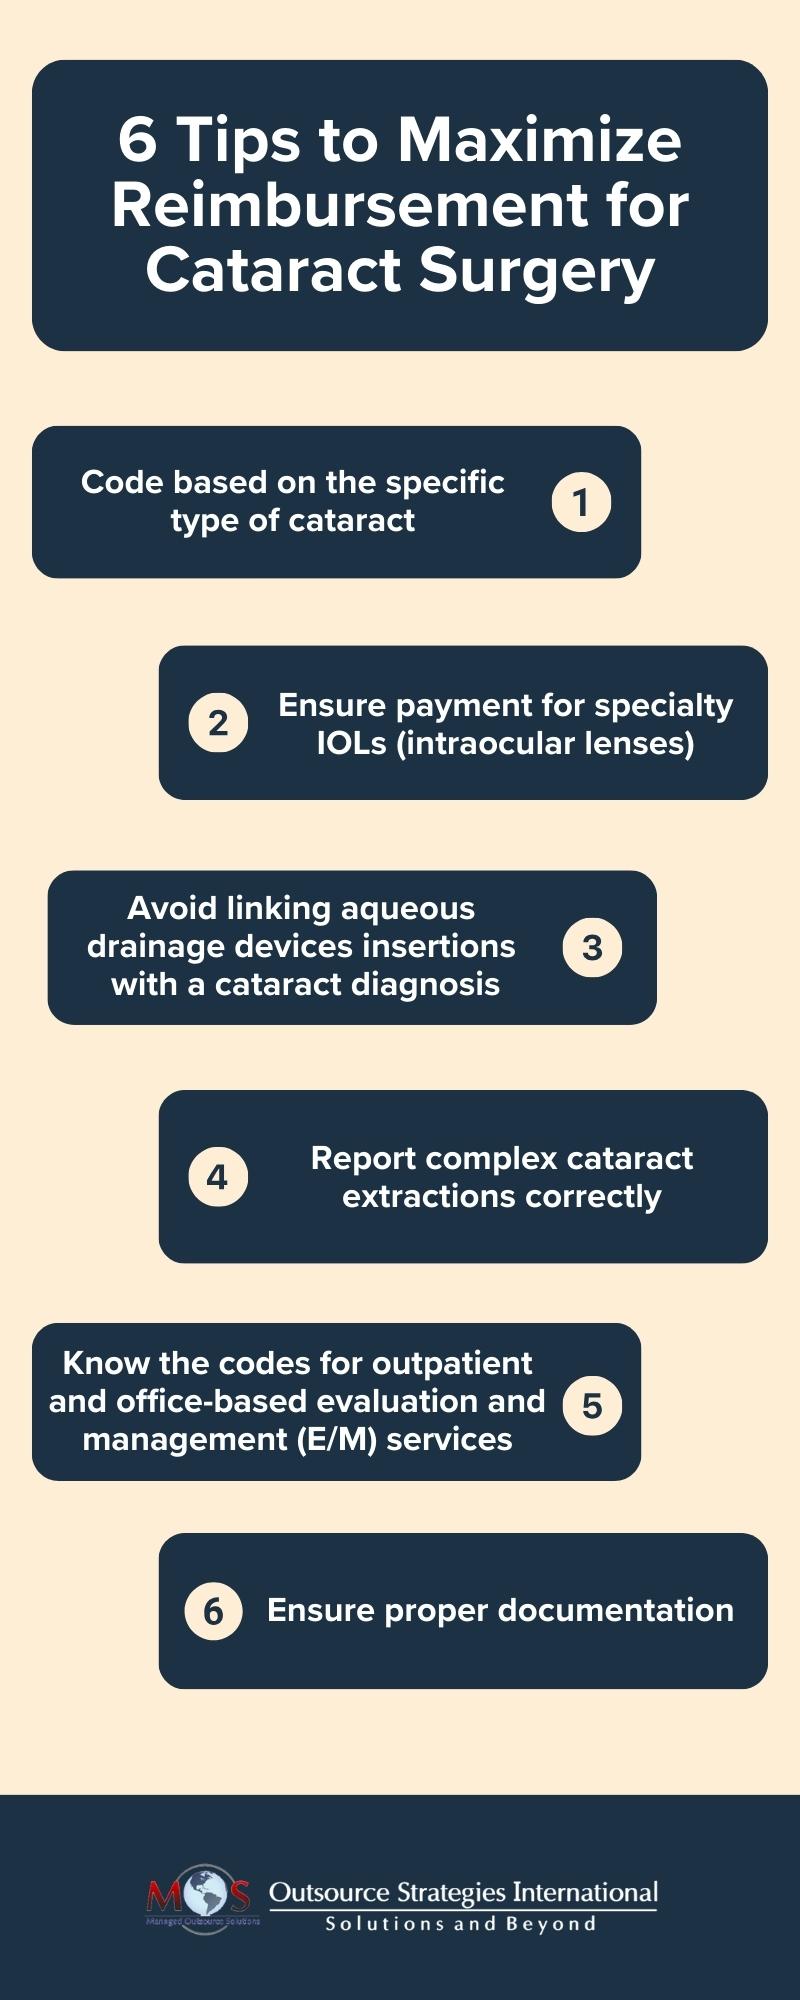 6 Tips to Maximize Reimbursement for Cataract Surgery